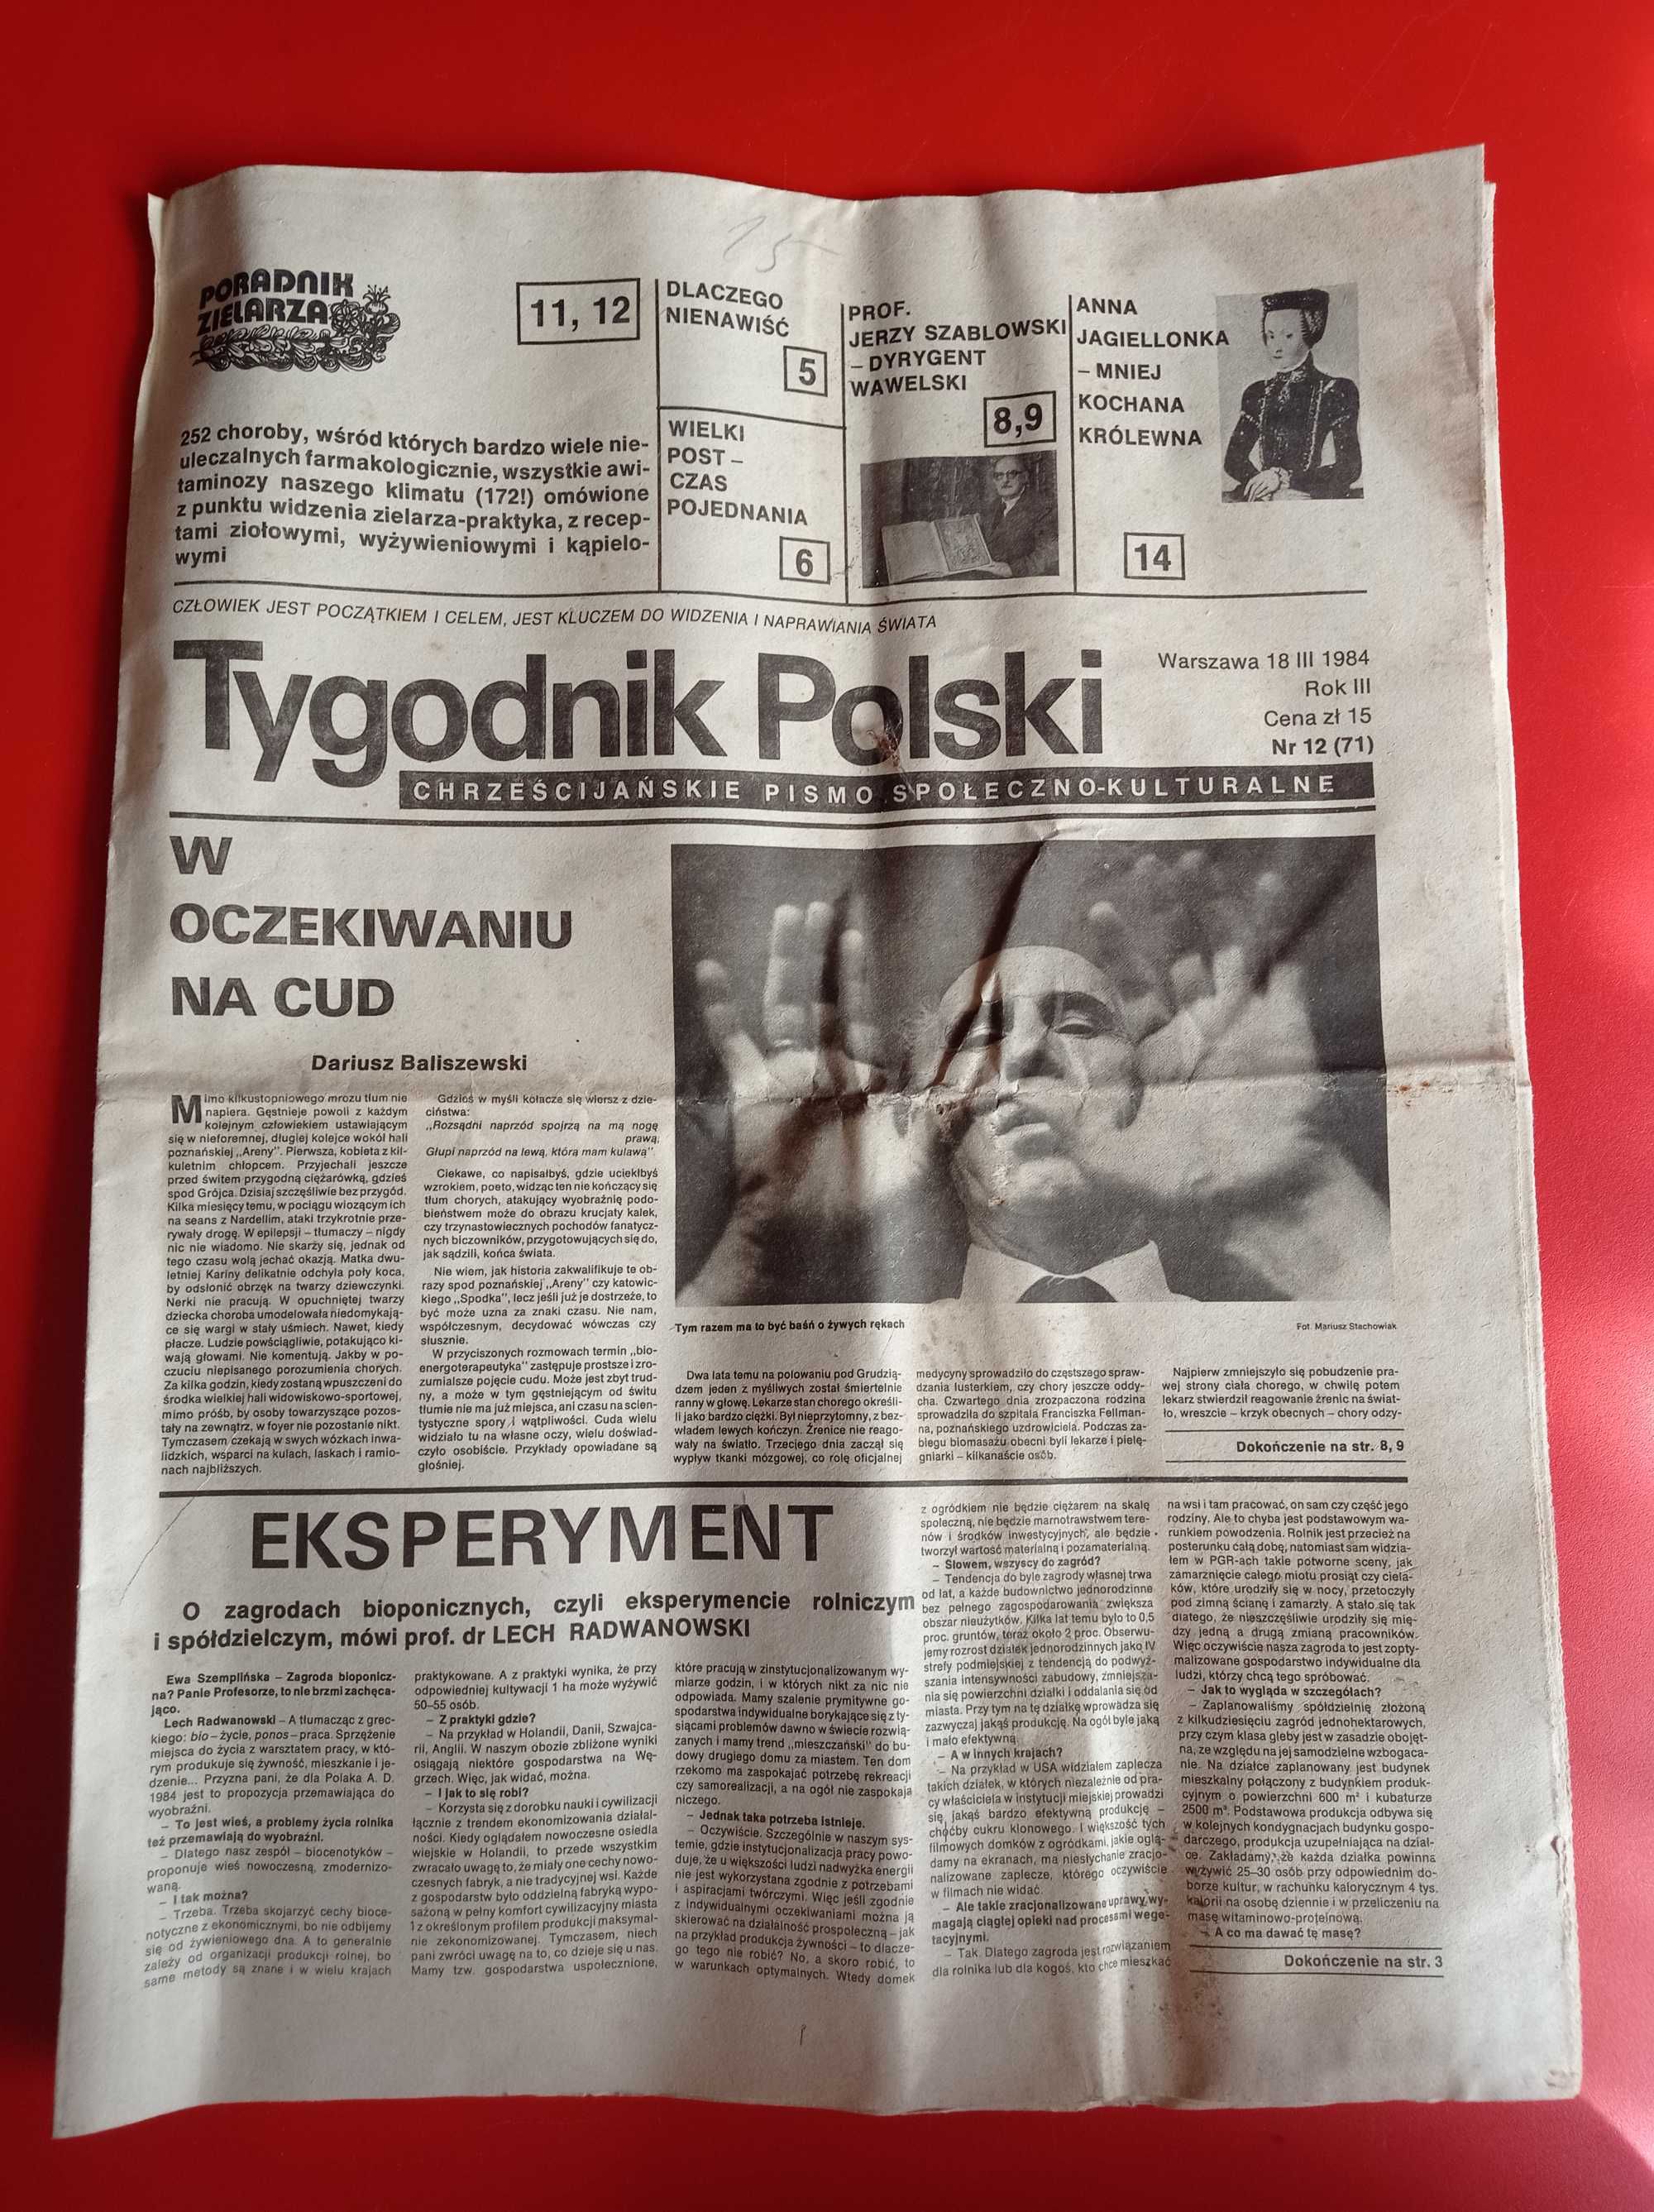 Tygodnik Polski, nr 12/1984, 18 marca 1984